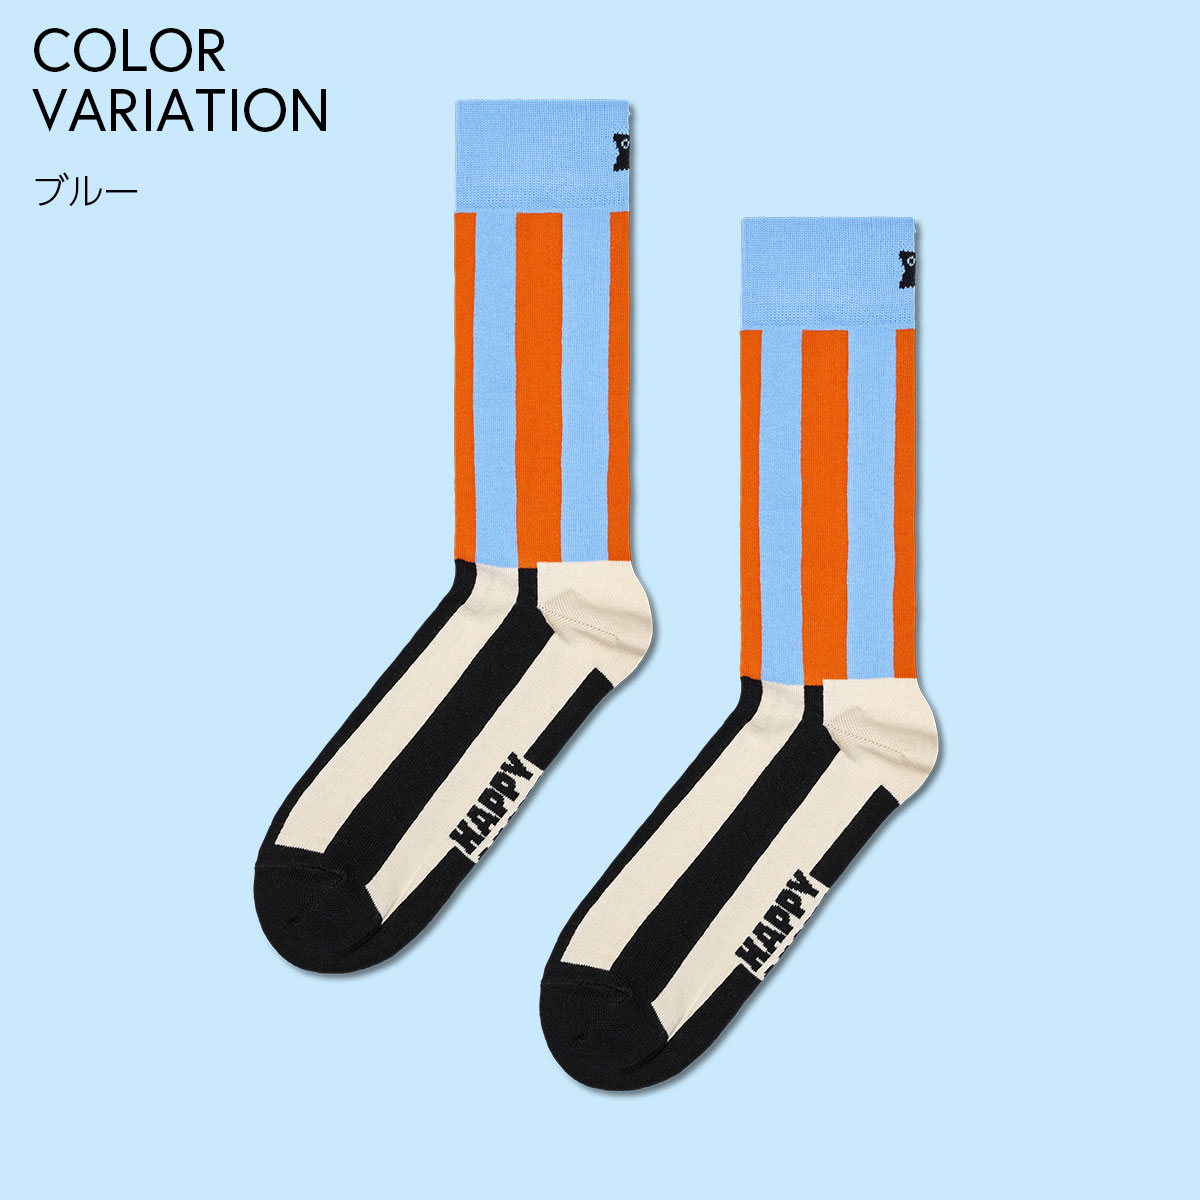 【24SS】Happy Socks ハッピーソックス Striped ( ストライプ ) クルー丈 ソックス ユニセックス メンズ ＆ レディス 10240088